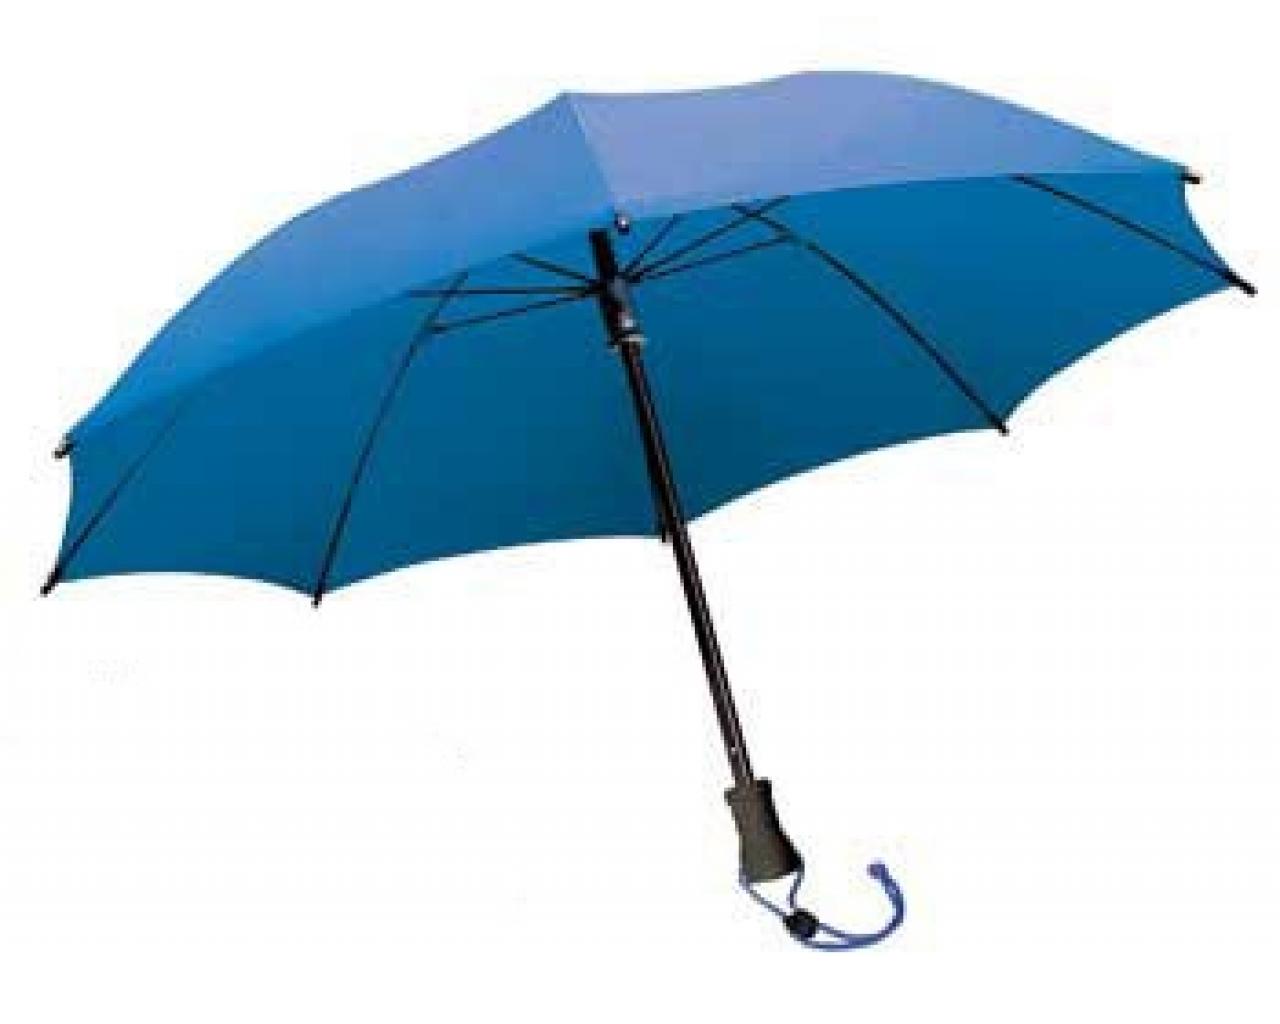 Der Regenschirm Euroschirm Birdiepal Outdoor